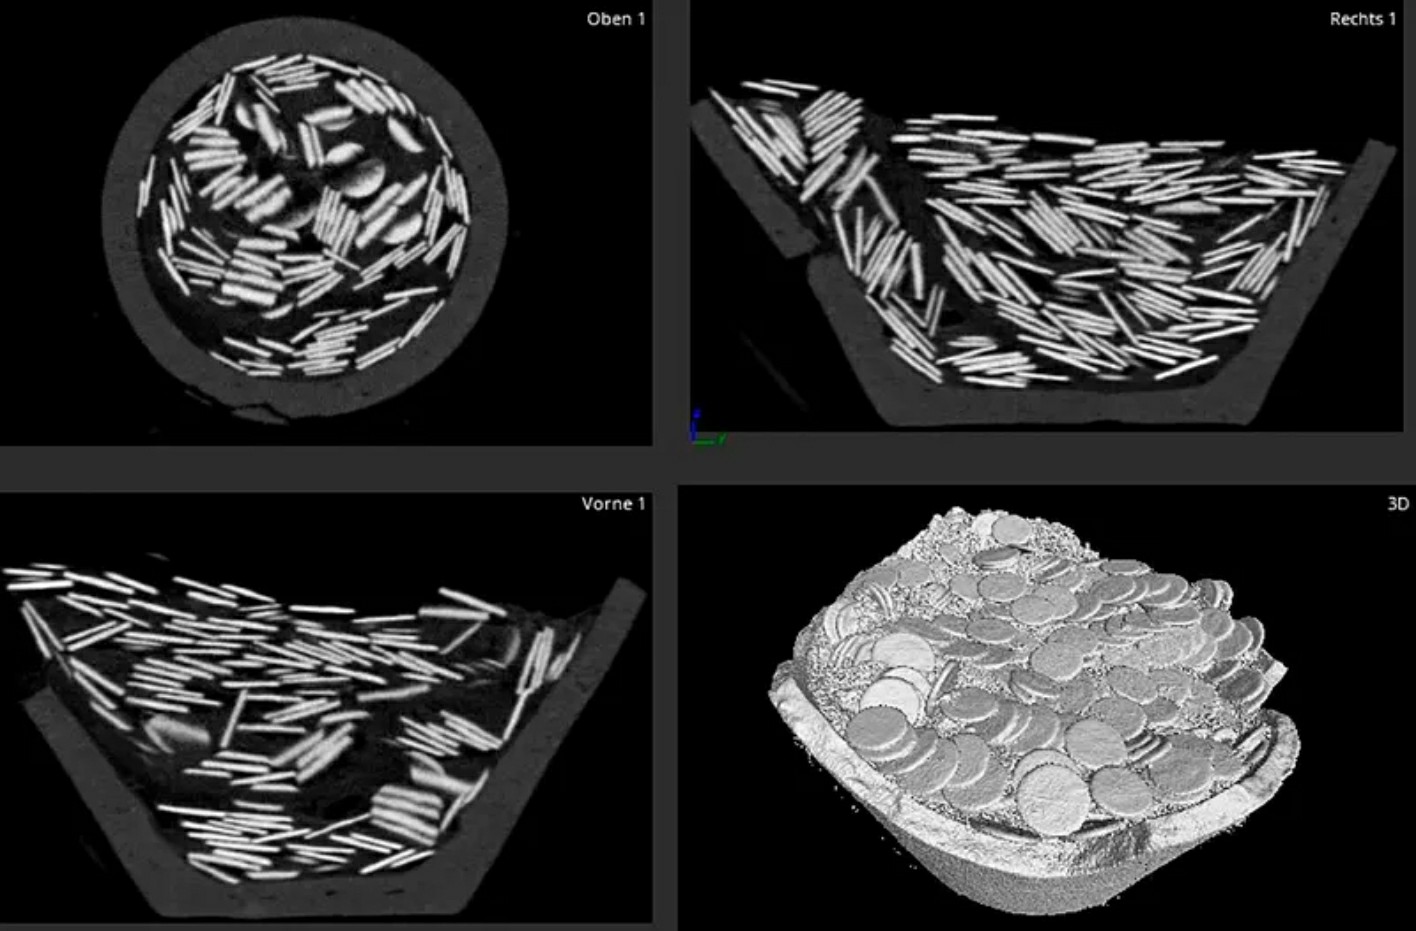 Instituti Federal i Testimit dhe Kërkimit të Materialeve ia nënshtroi gjetjen tomografisë kompjuterike dhe analizoi përbërjen e monedhave. Tomografia zbuloi gjithashtu rripin e lëkurës së lopës që ndante monedhat në dysh.